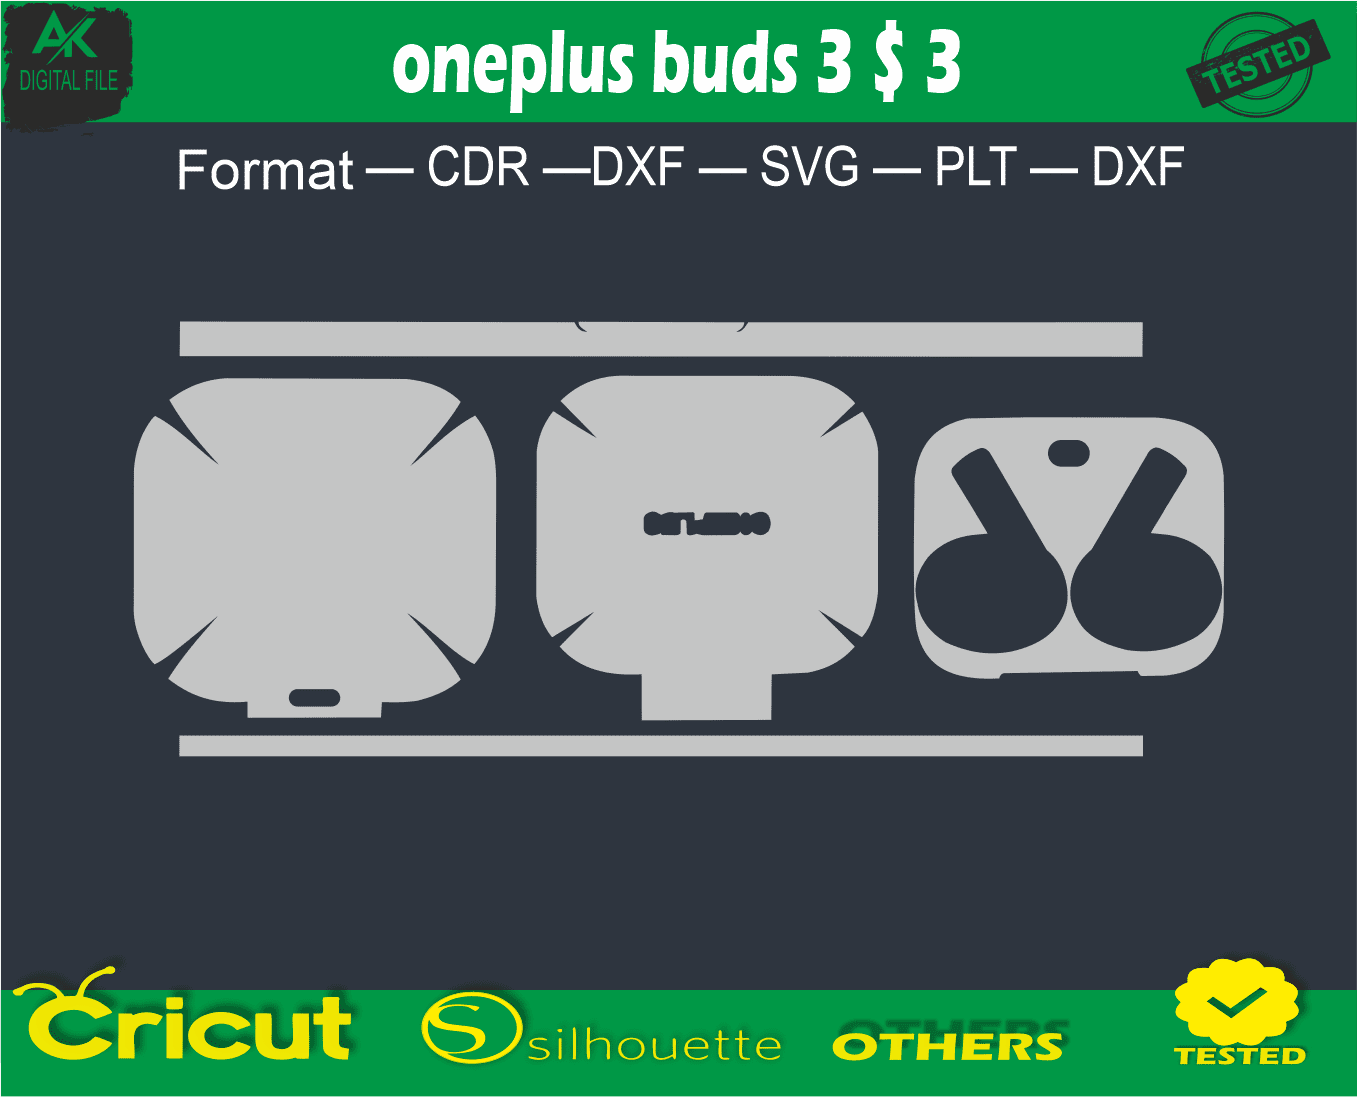 oneplus buds 3